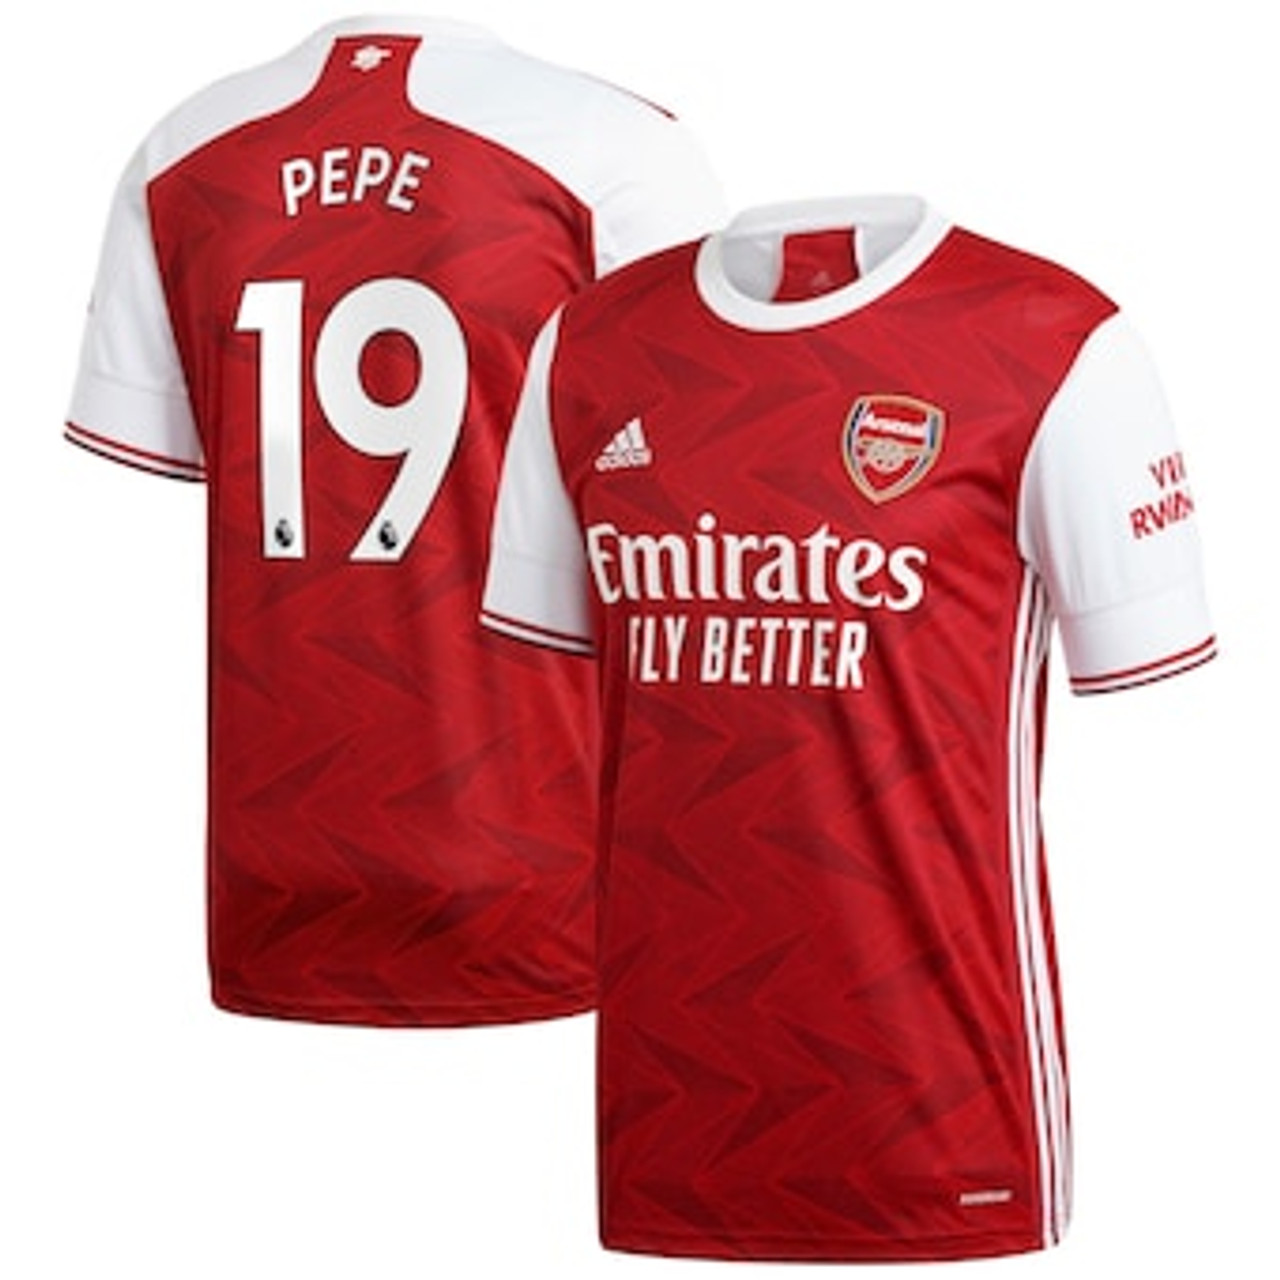 Arsenal 2020 21 kit